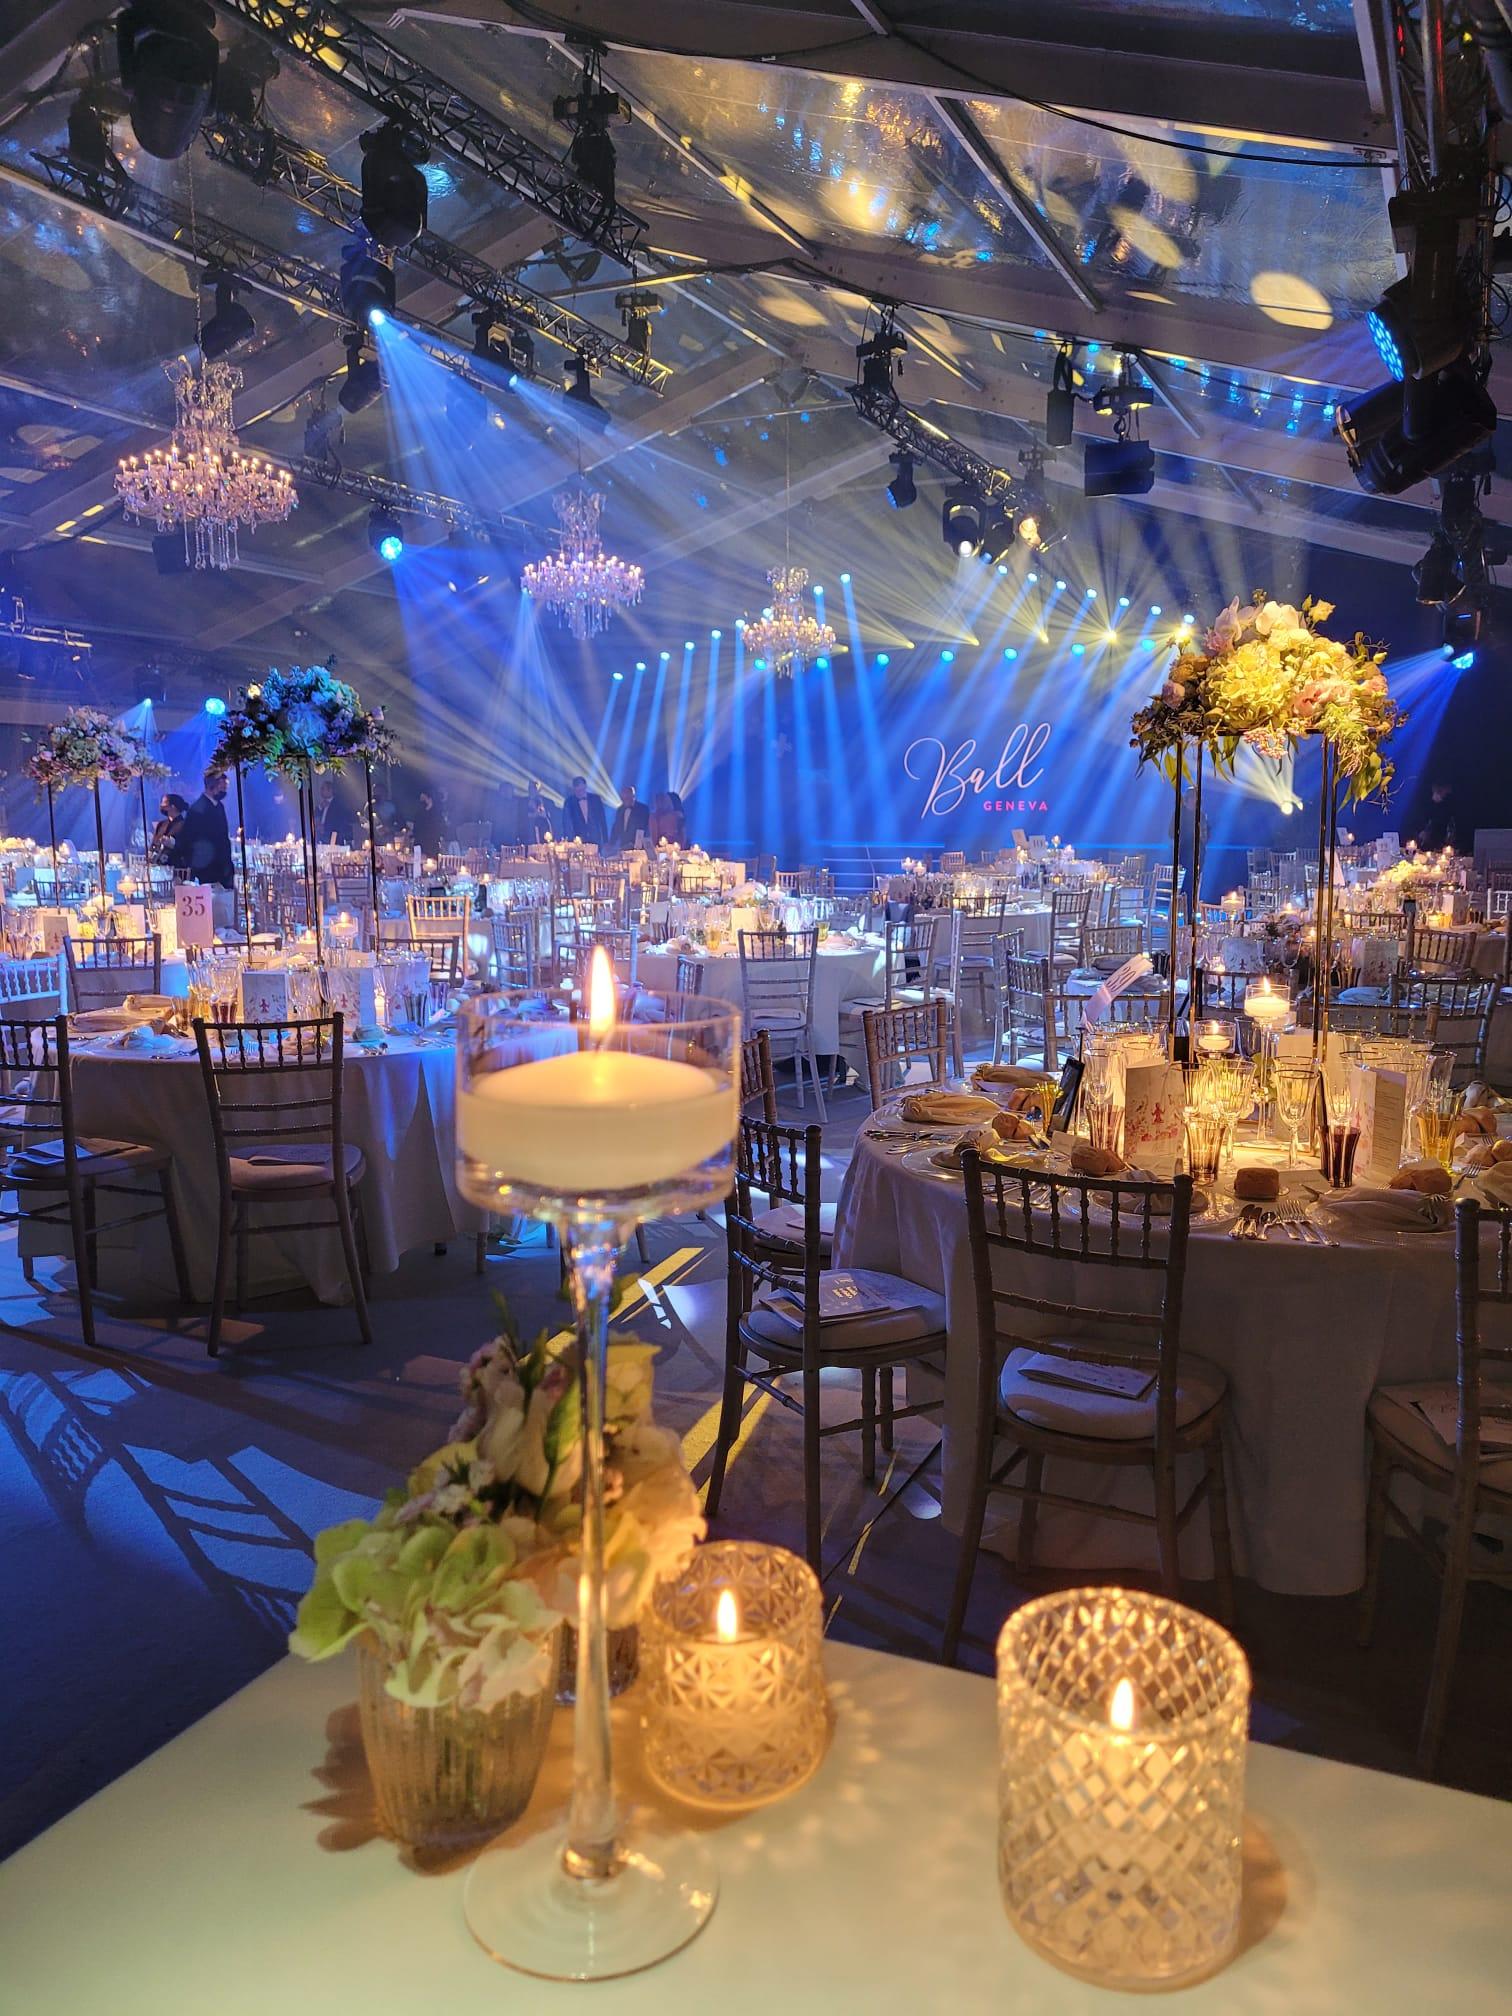 Der dekorierte Saal beim Rotkreuz-Ball Genf mit Kerzen auf den Tischen und schönem warmen Licht.